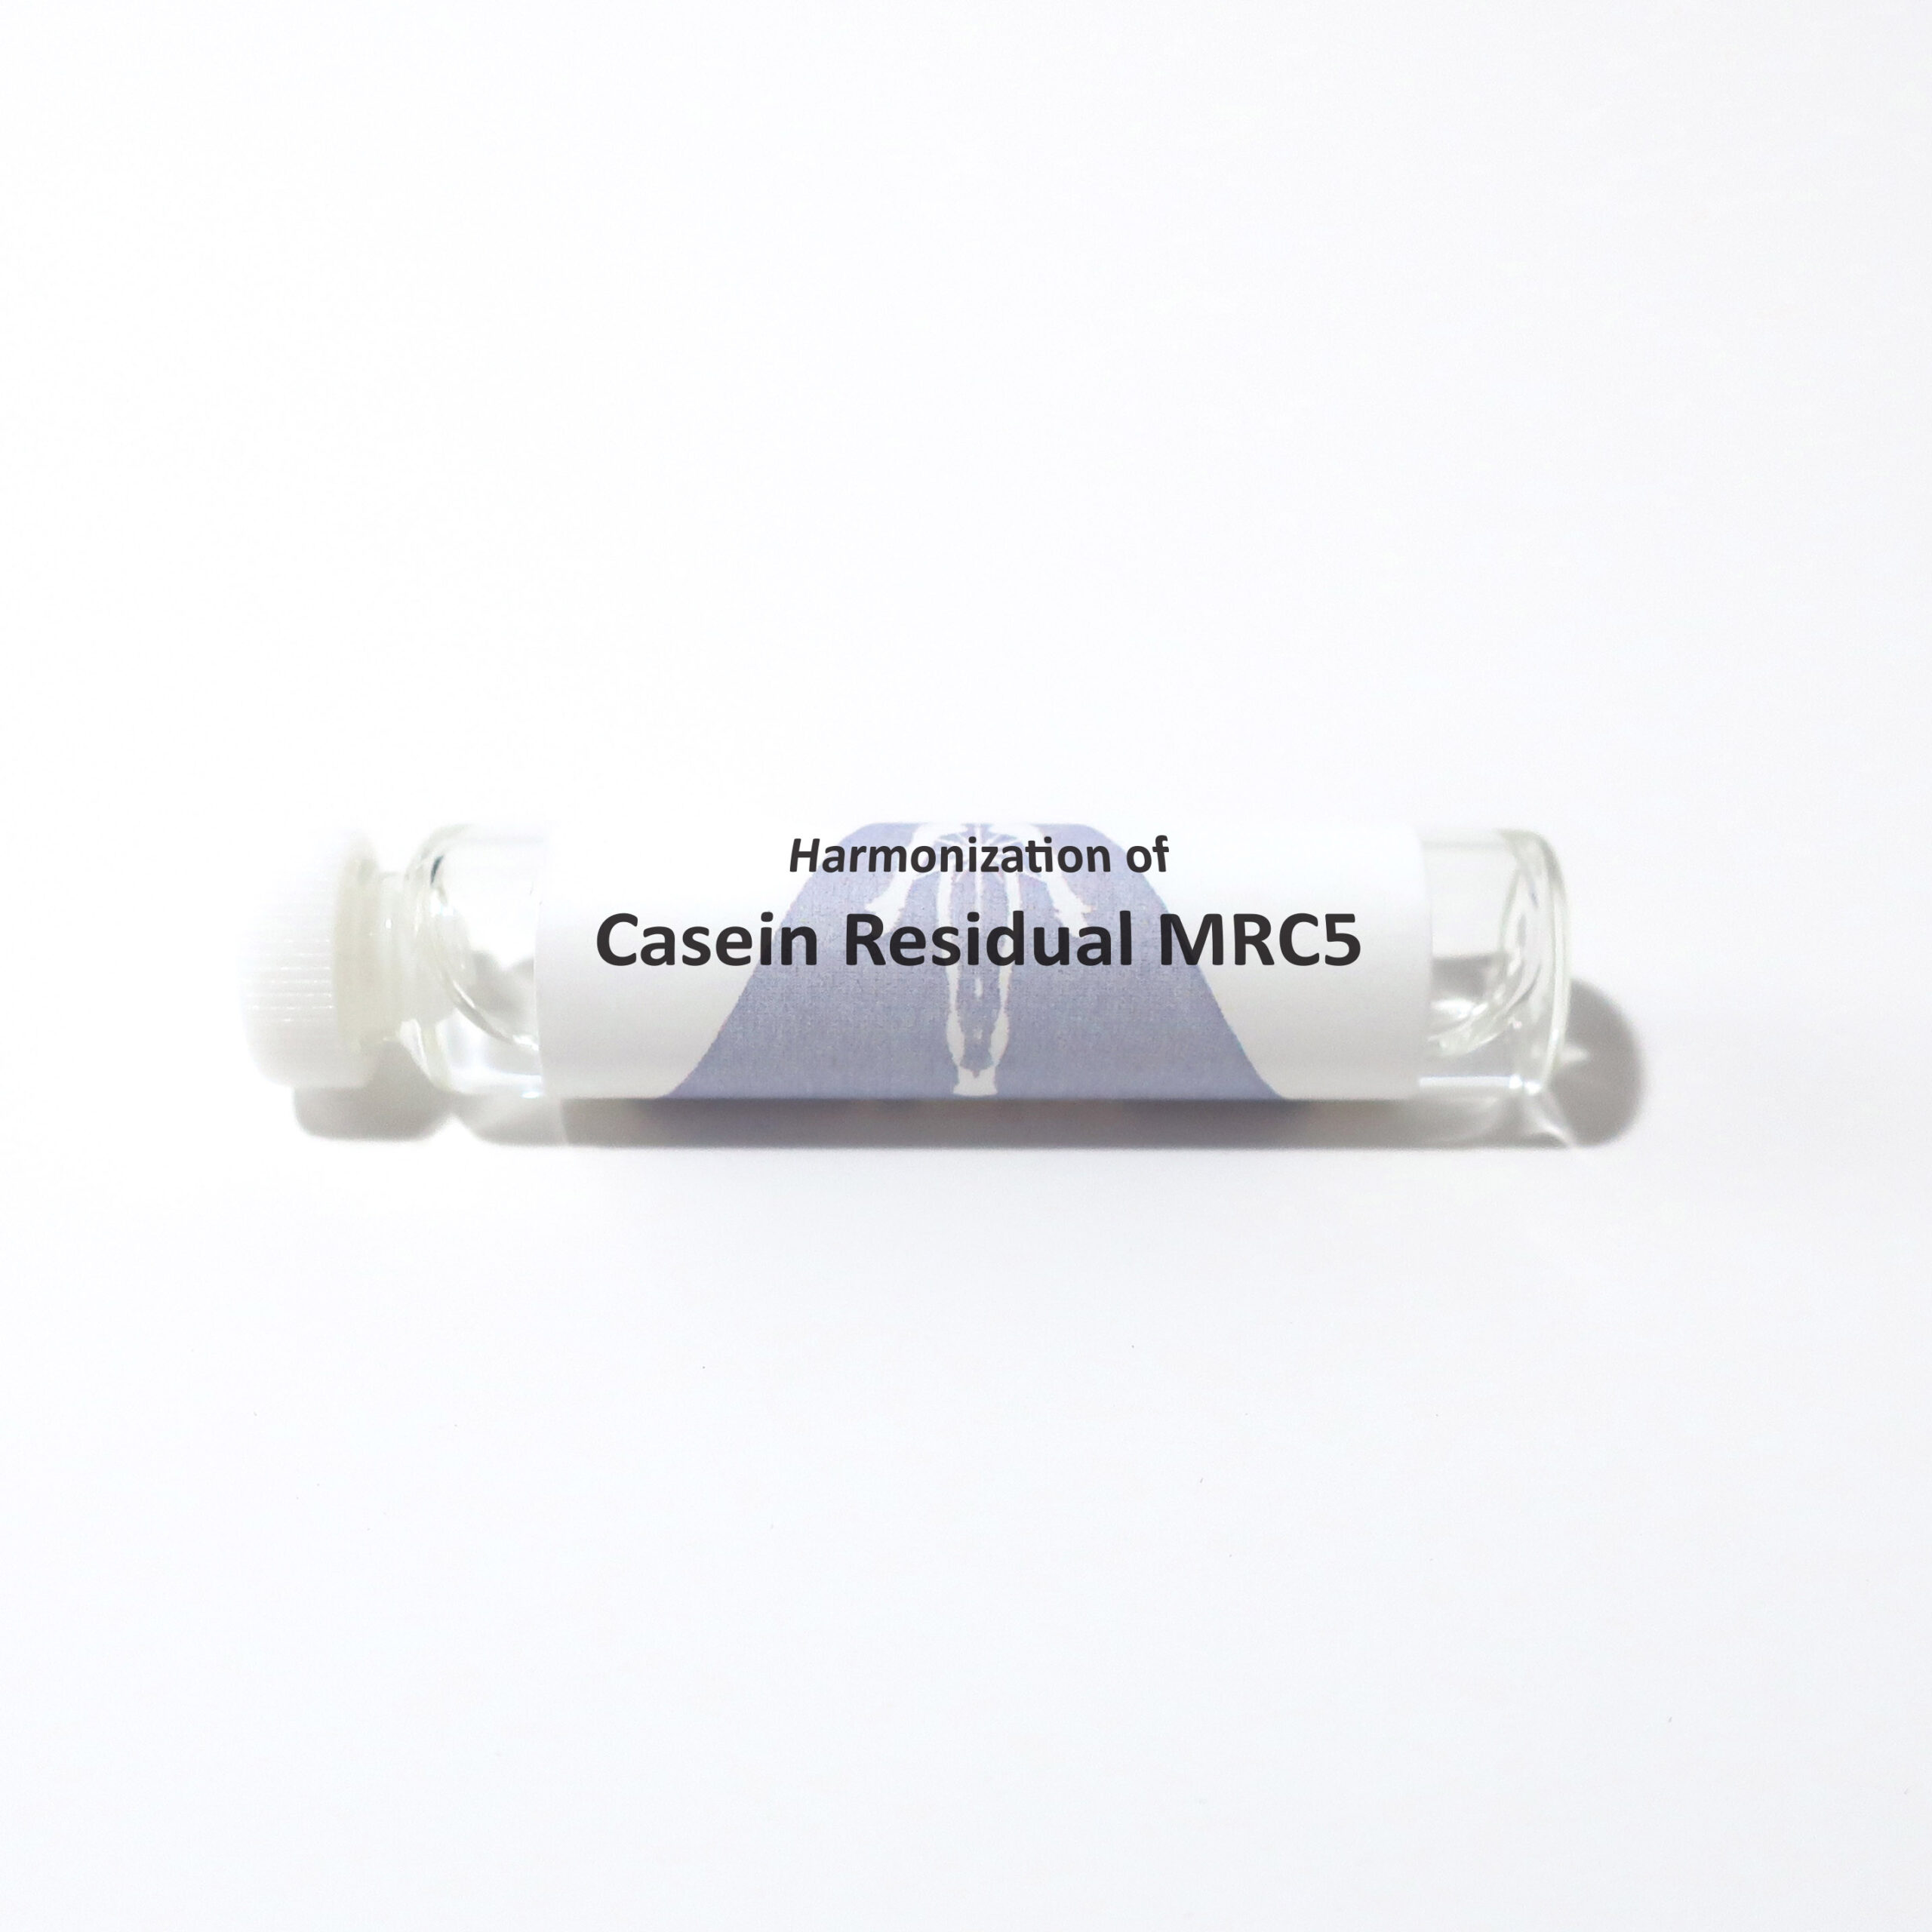 Casein Residual MRC5